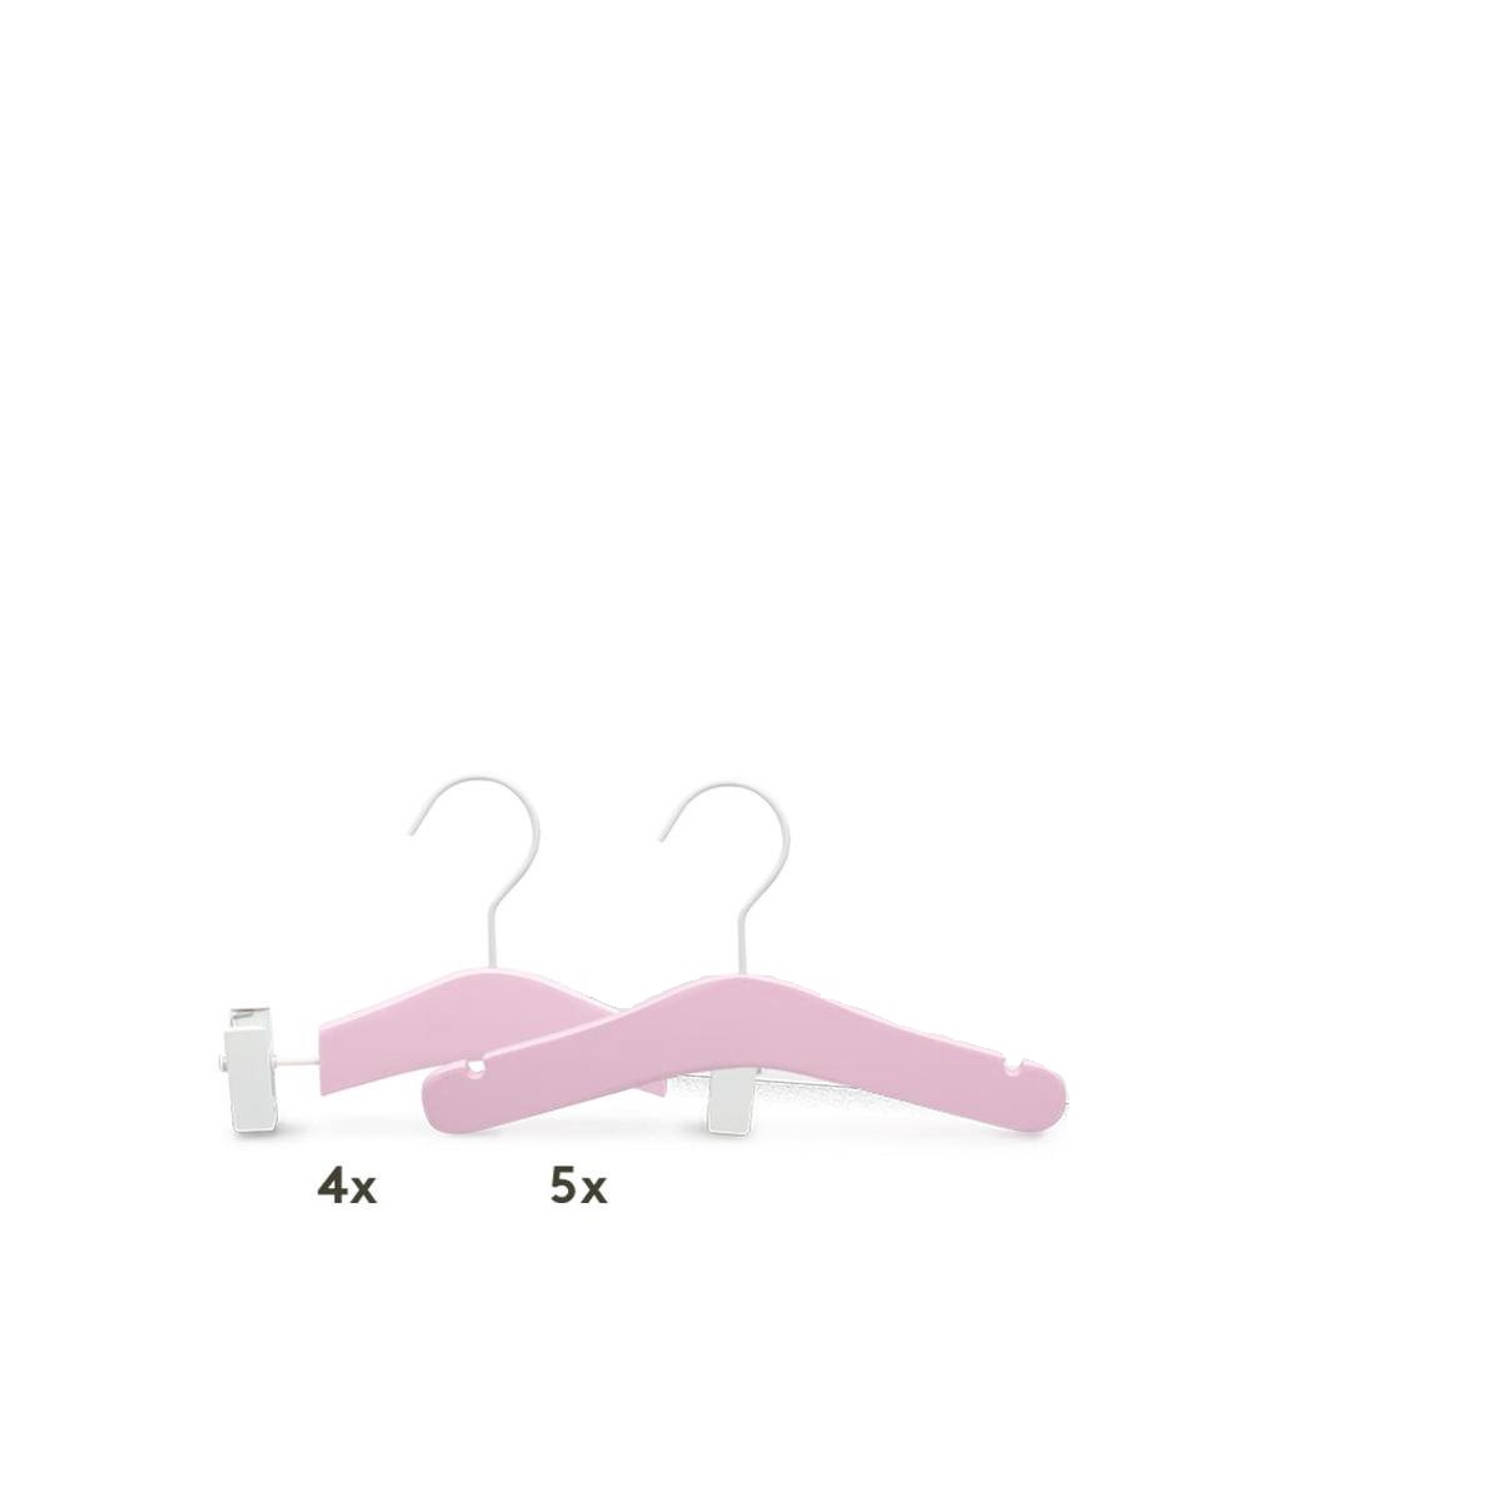 Relaxwonen - Baby kledinghangers - Set van 9 - Roze - Broek en kledinghangers - extra stevig